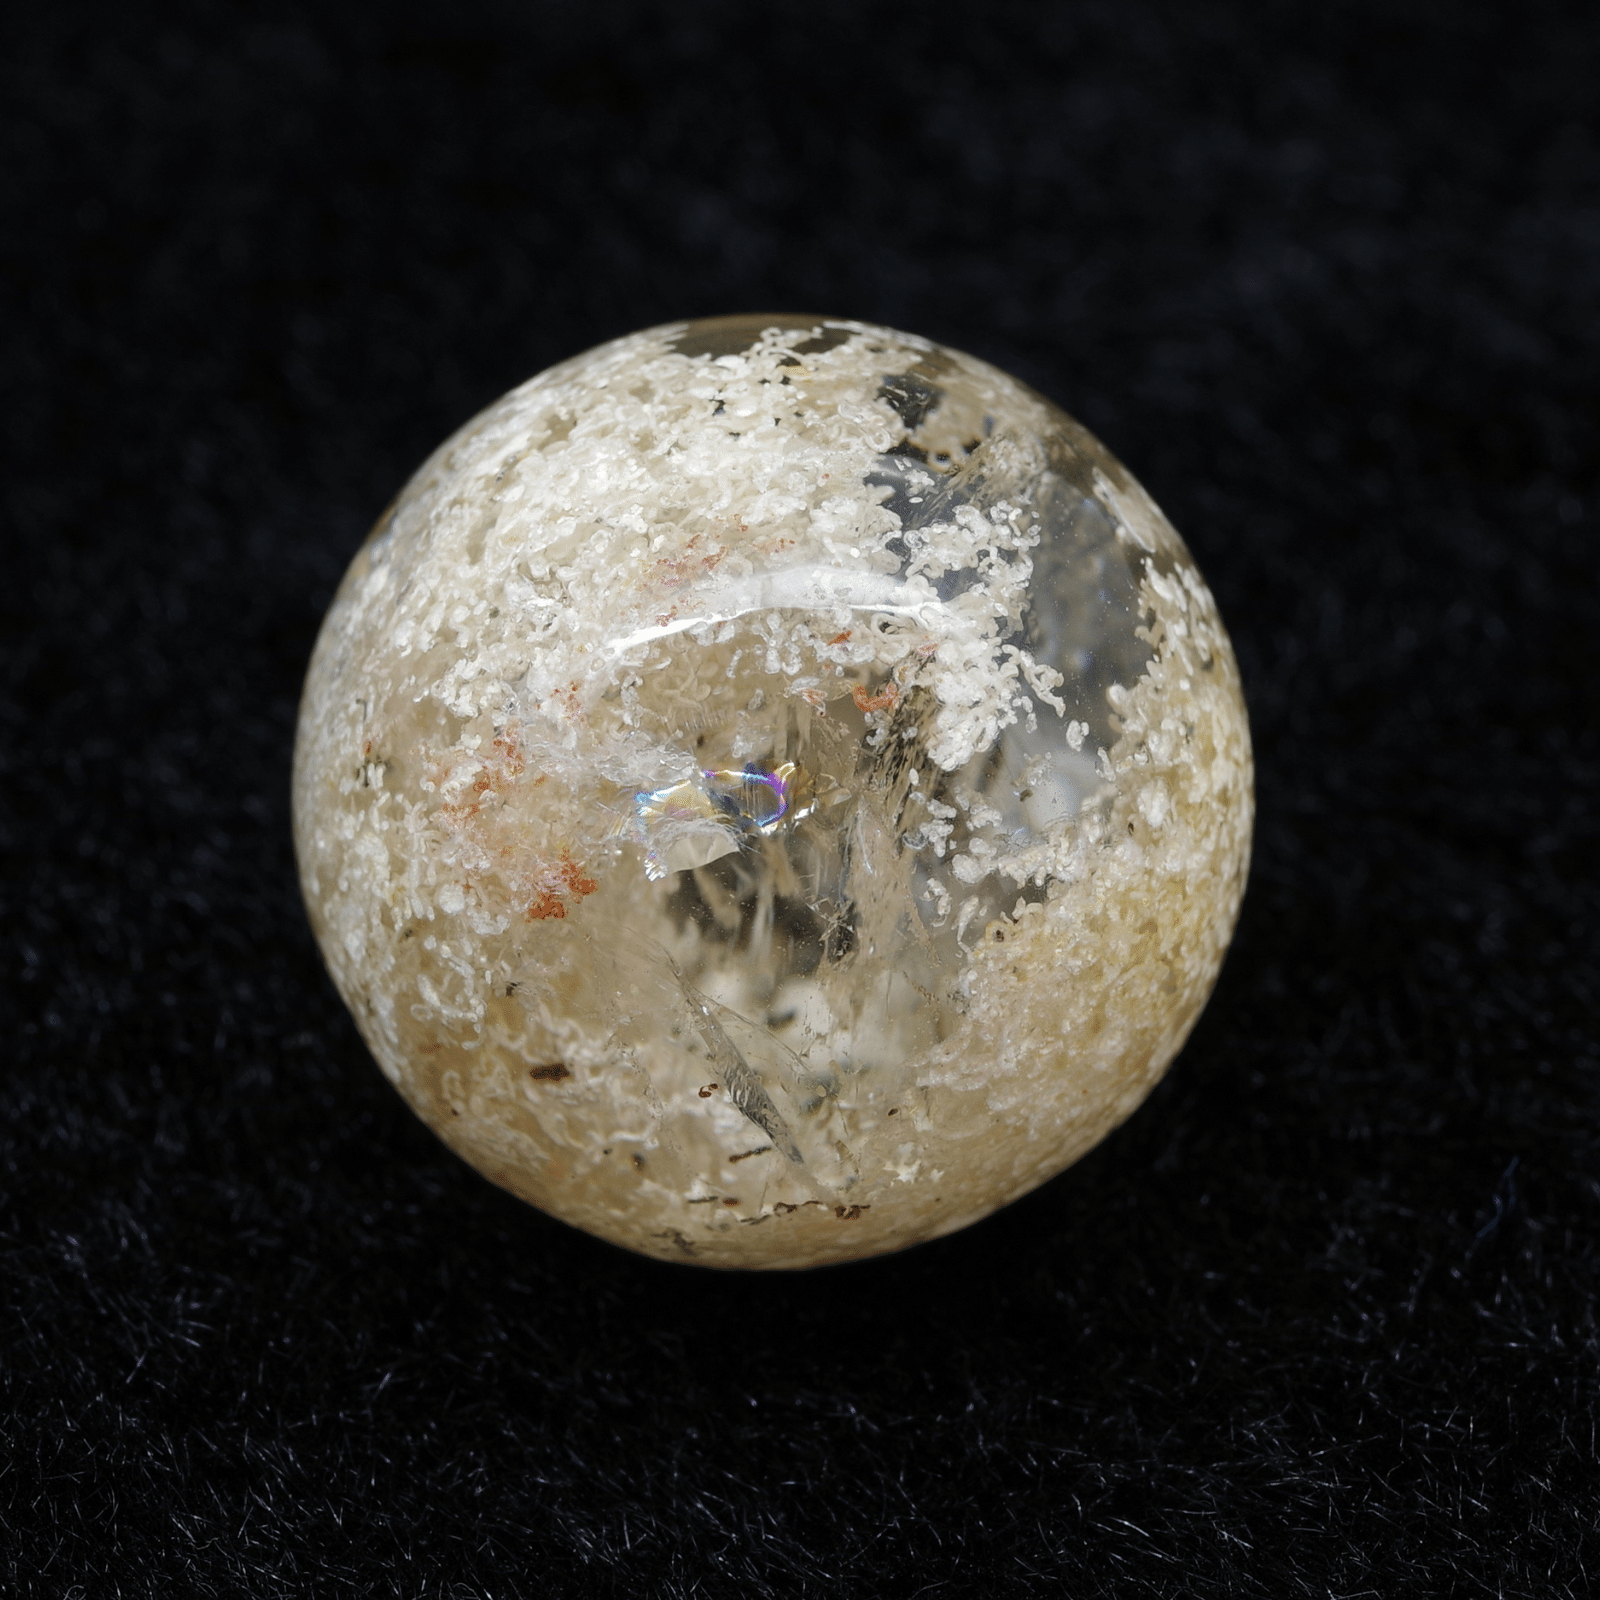 ホワイトガーデンクォーツ スフィア No.1 - ハイグレード天然石 